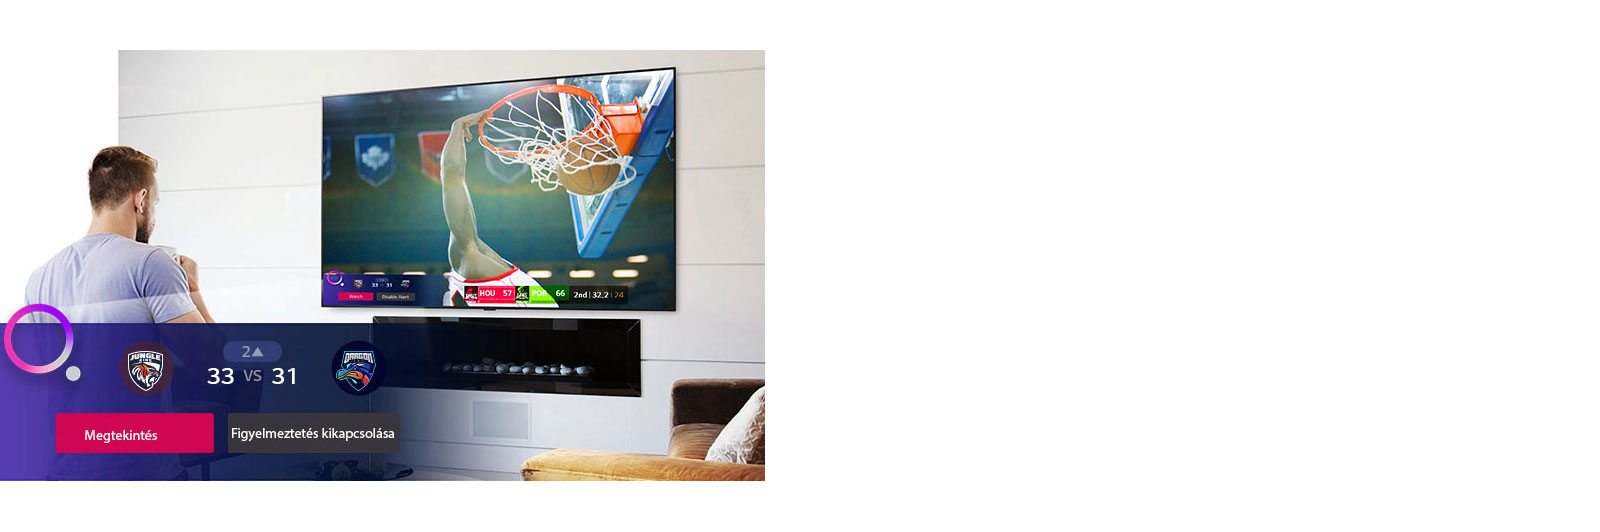 TV-képernyőn megjelenő jelenet egy kosárlabda-mérkőzésről, amint megjelenik a sportfigyelmeztetés.